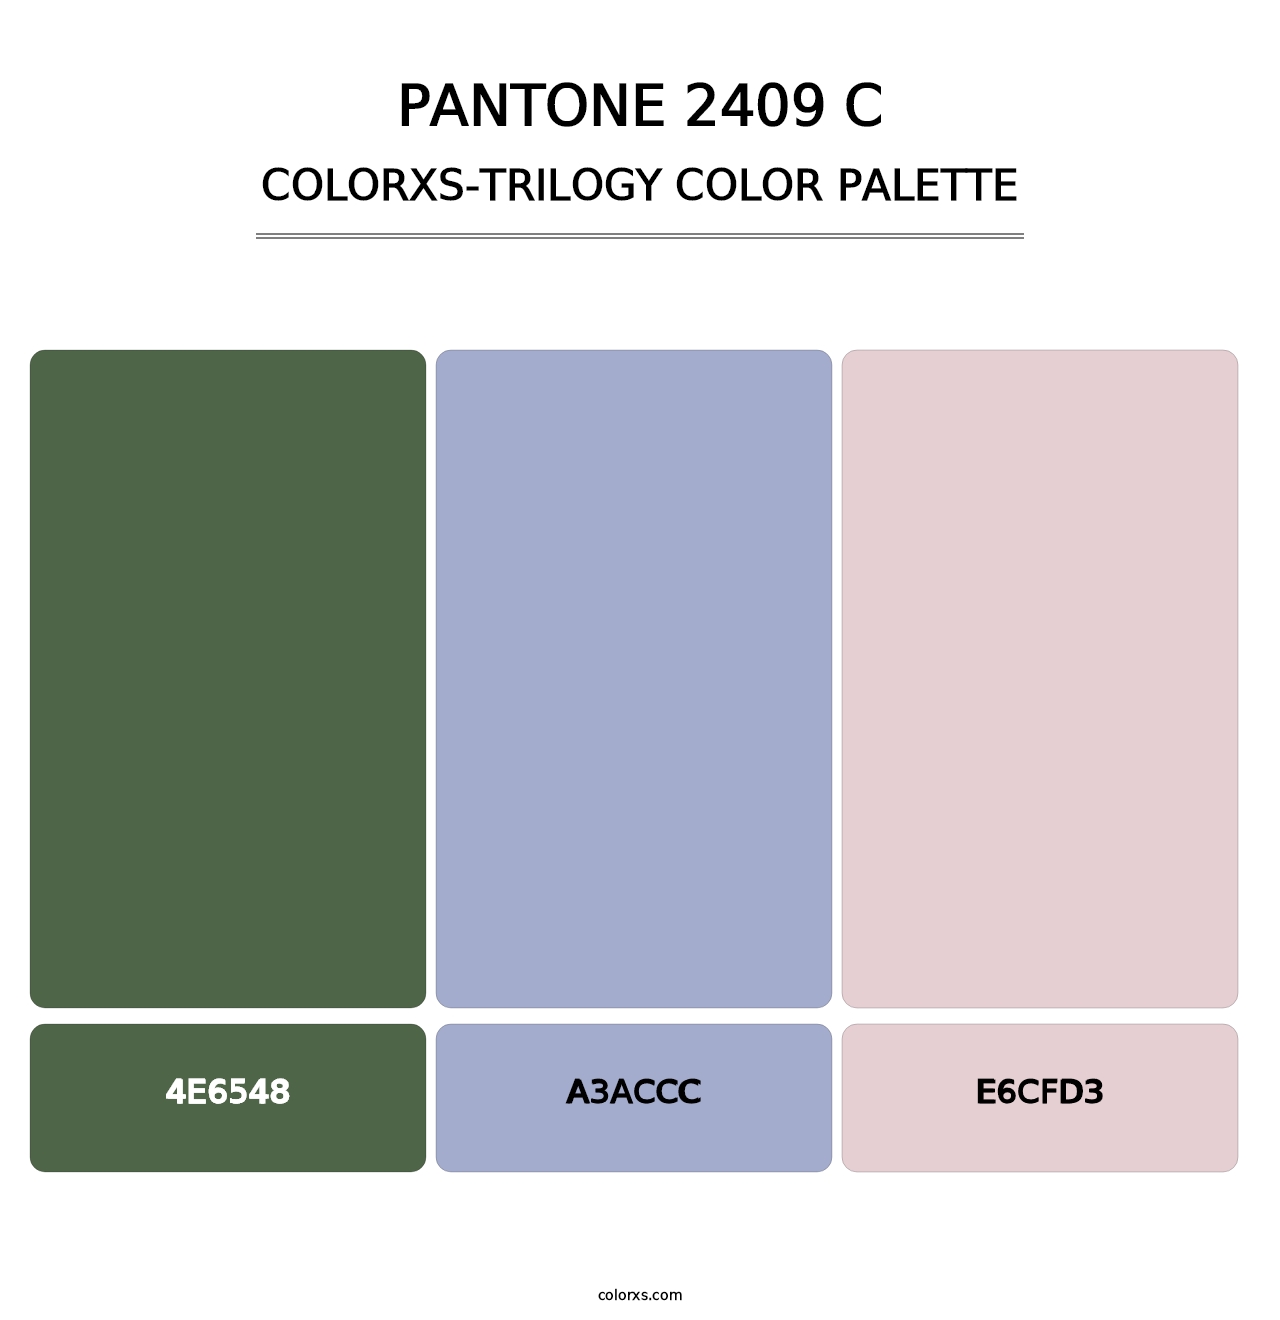 PANTONE 2409 C - Colorxs Trilogy Palette